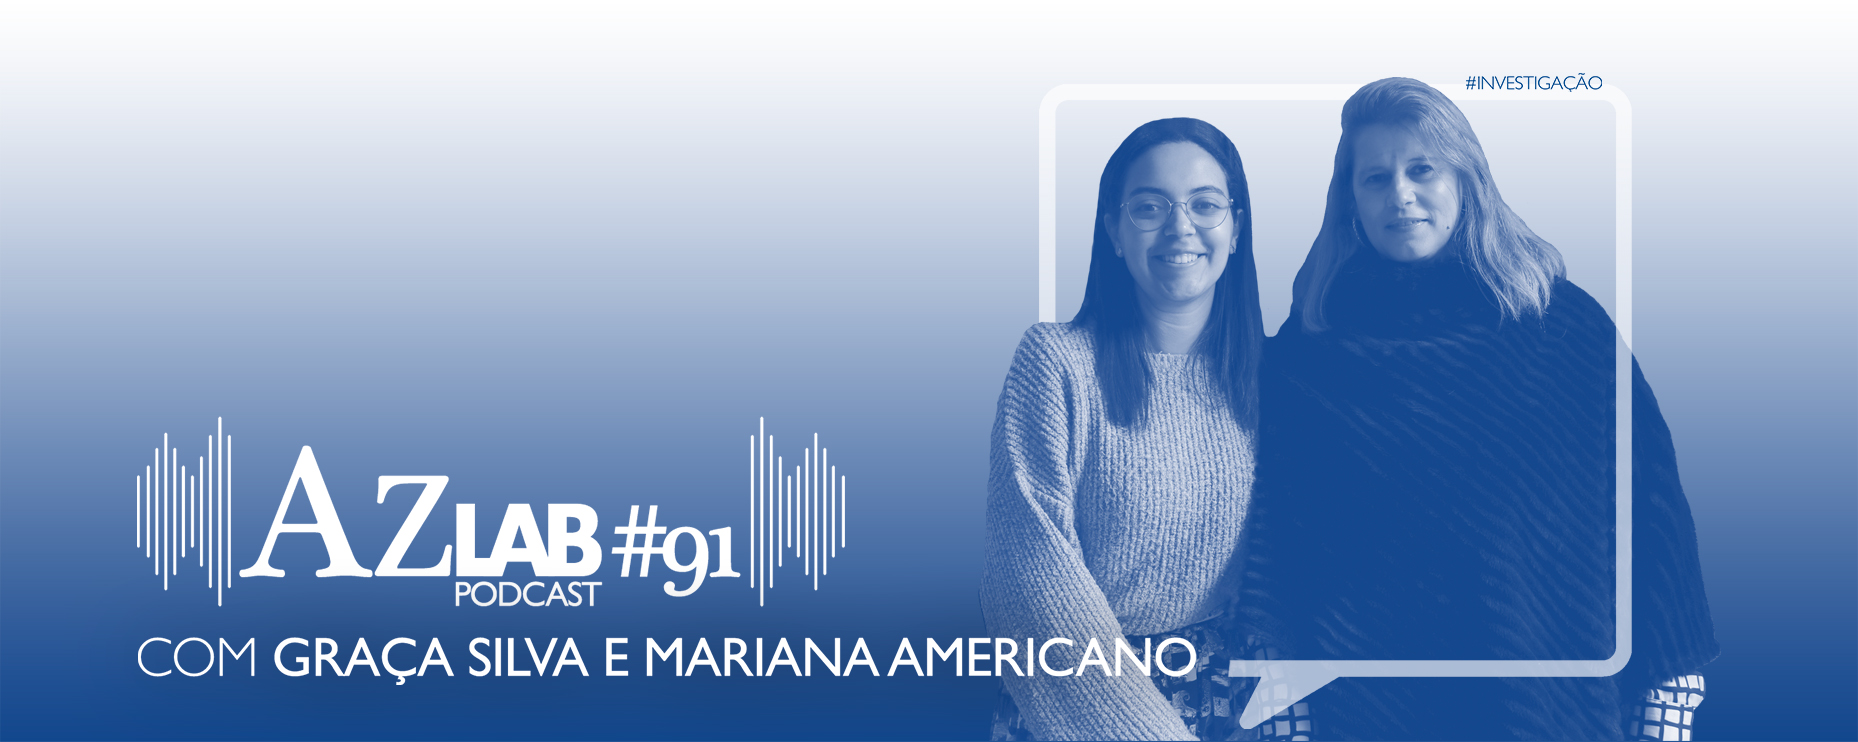 AZLAB#91 [PODCAST] | COM GRAA SILVA E MARIANA AMERICANO